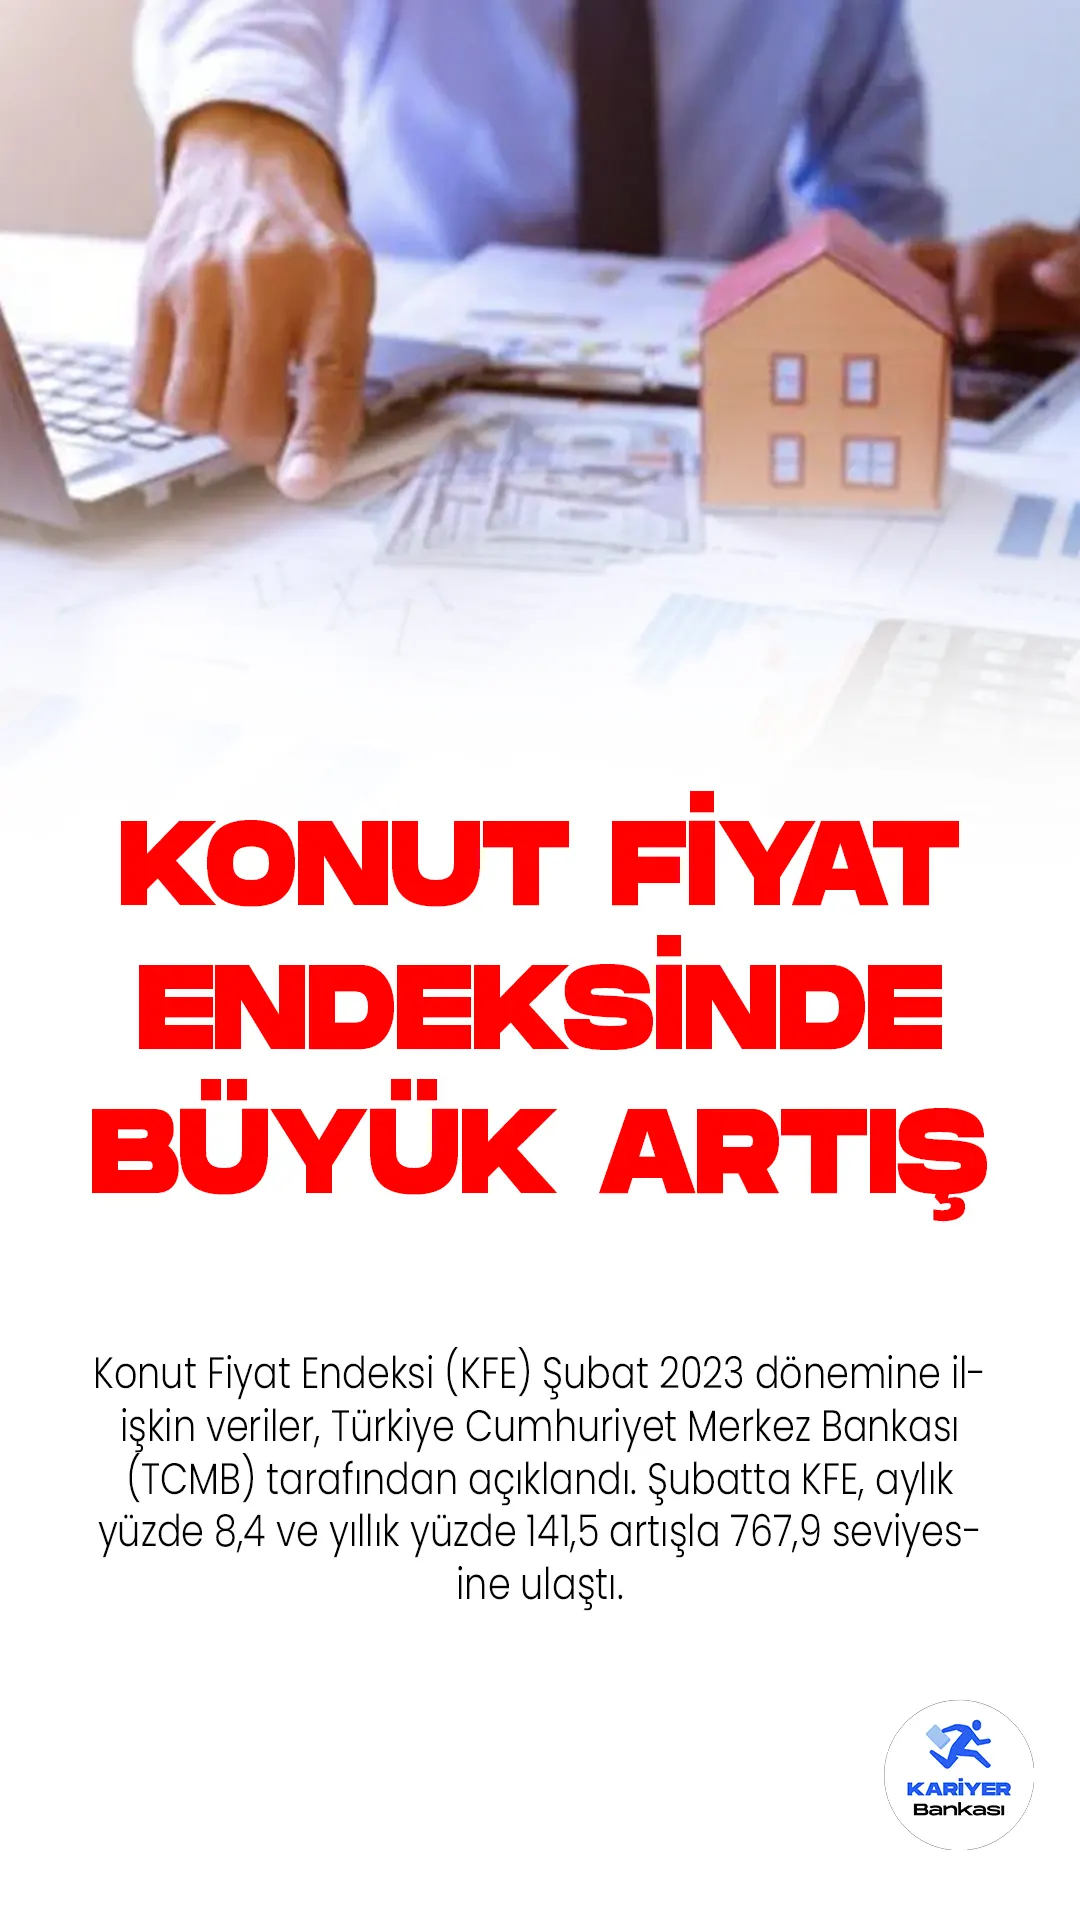 Konut Fiyat Endeksi (KFE) Şubat 2023 dönemine ilişkin veriler, Türkiye Cumhuriyet Merkez Bankası (TCMB) tarafından açıklandı. Şubatta KFE, aylık yüzde 8,4 ve yıllık yüzde 141,5 artışla 767,9 seviyesine ulaştı.